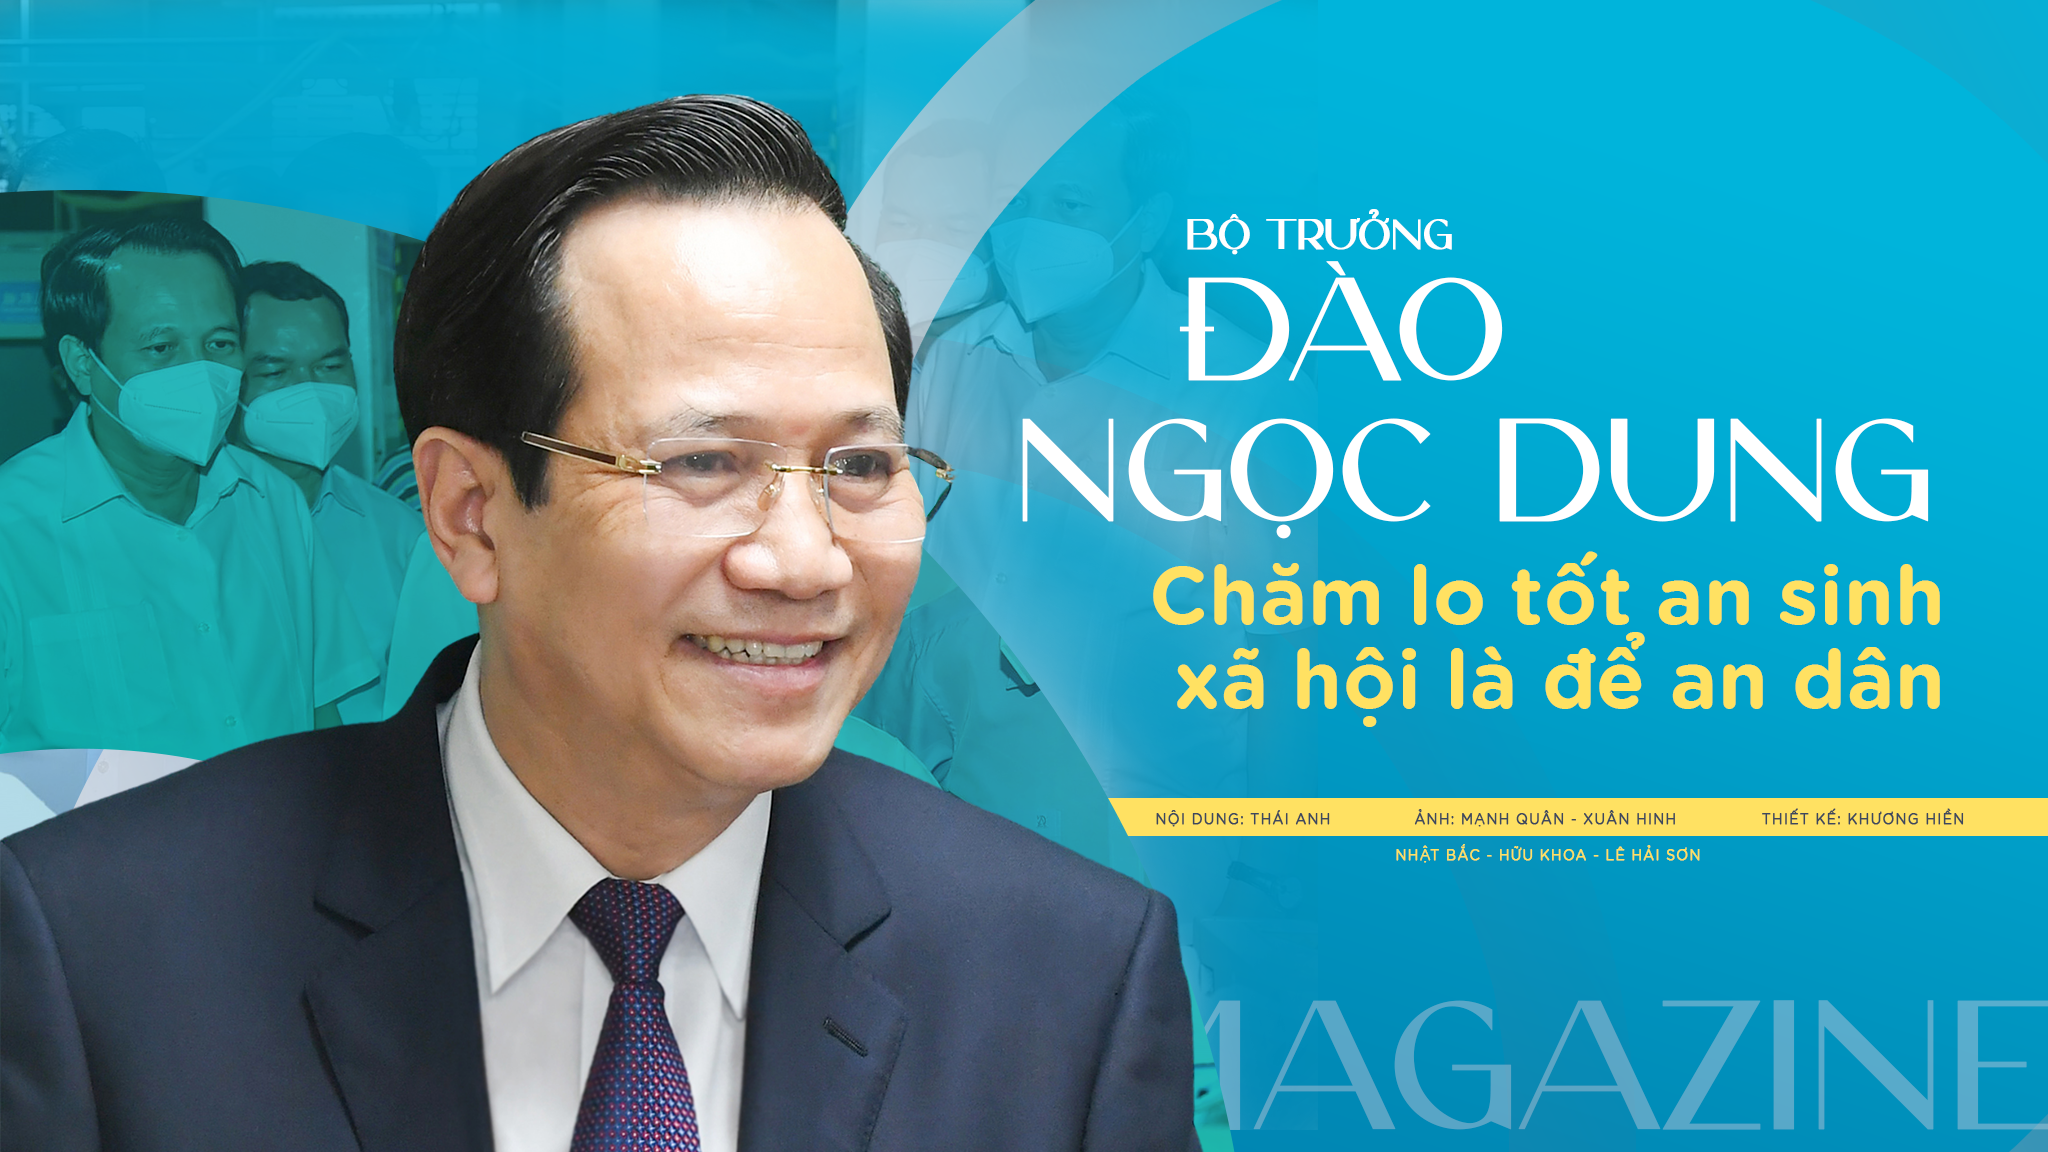 Bộ trưởng Đào Ngọc Dung: "Chăm lo tốt an sinh xã hội là để an dân"